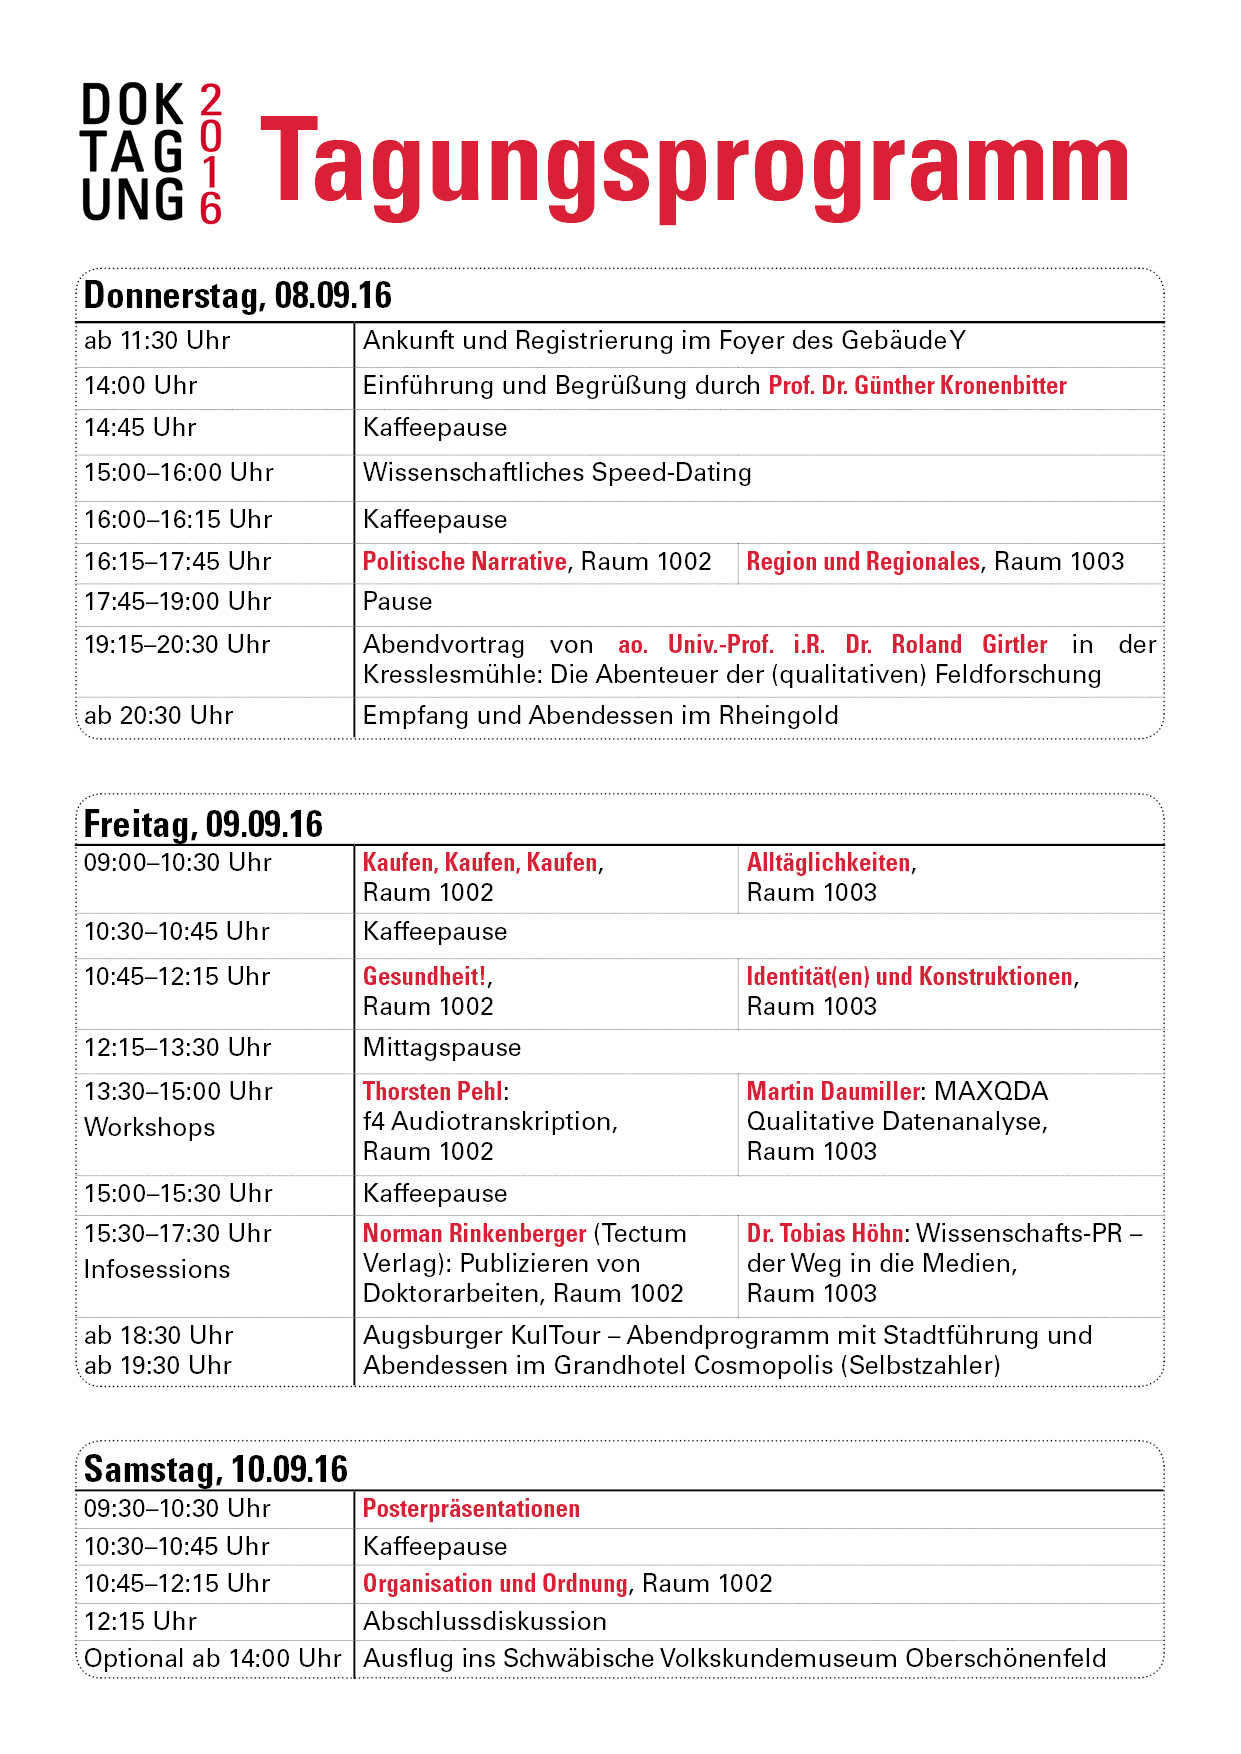 Programm der 11. dgv-Doktagung in Augsburg